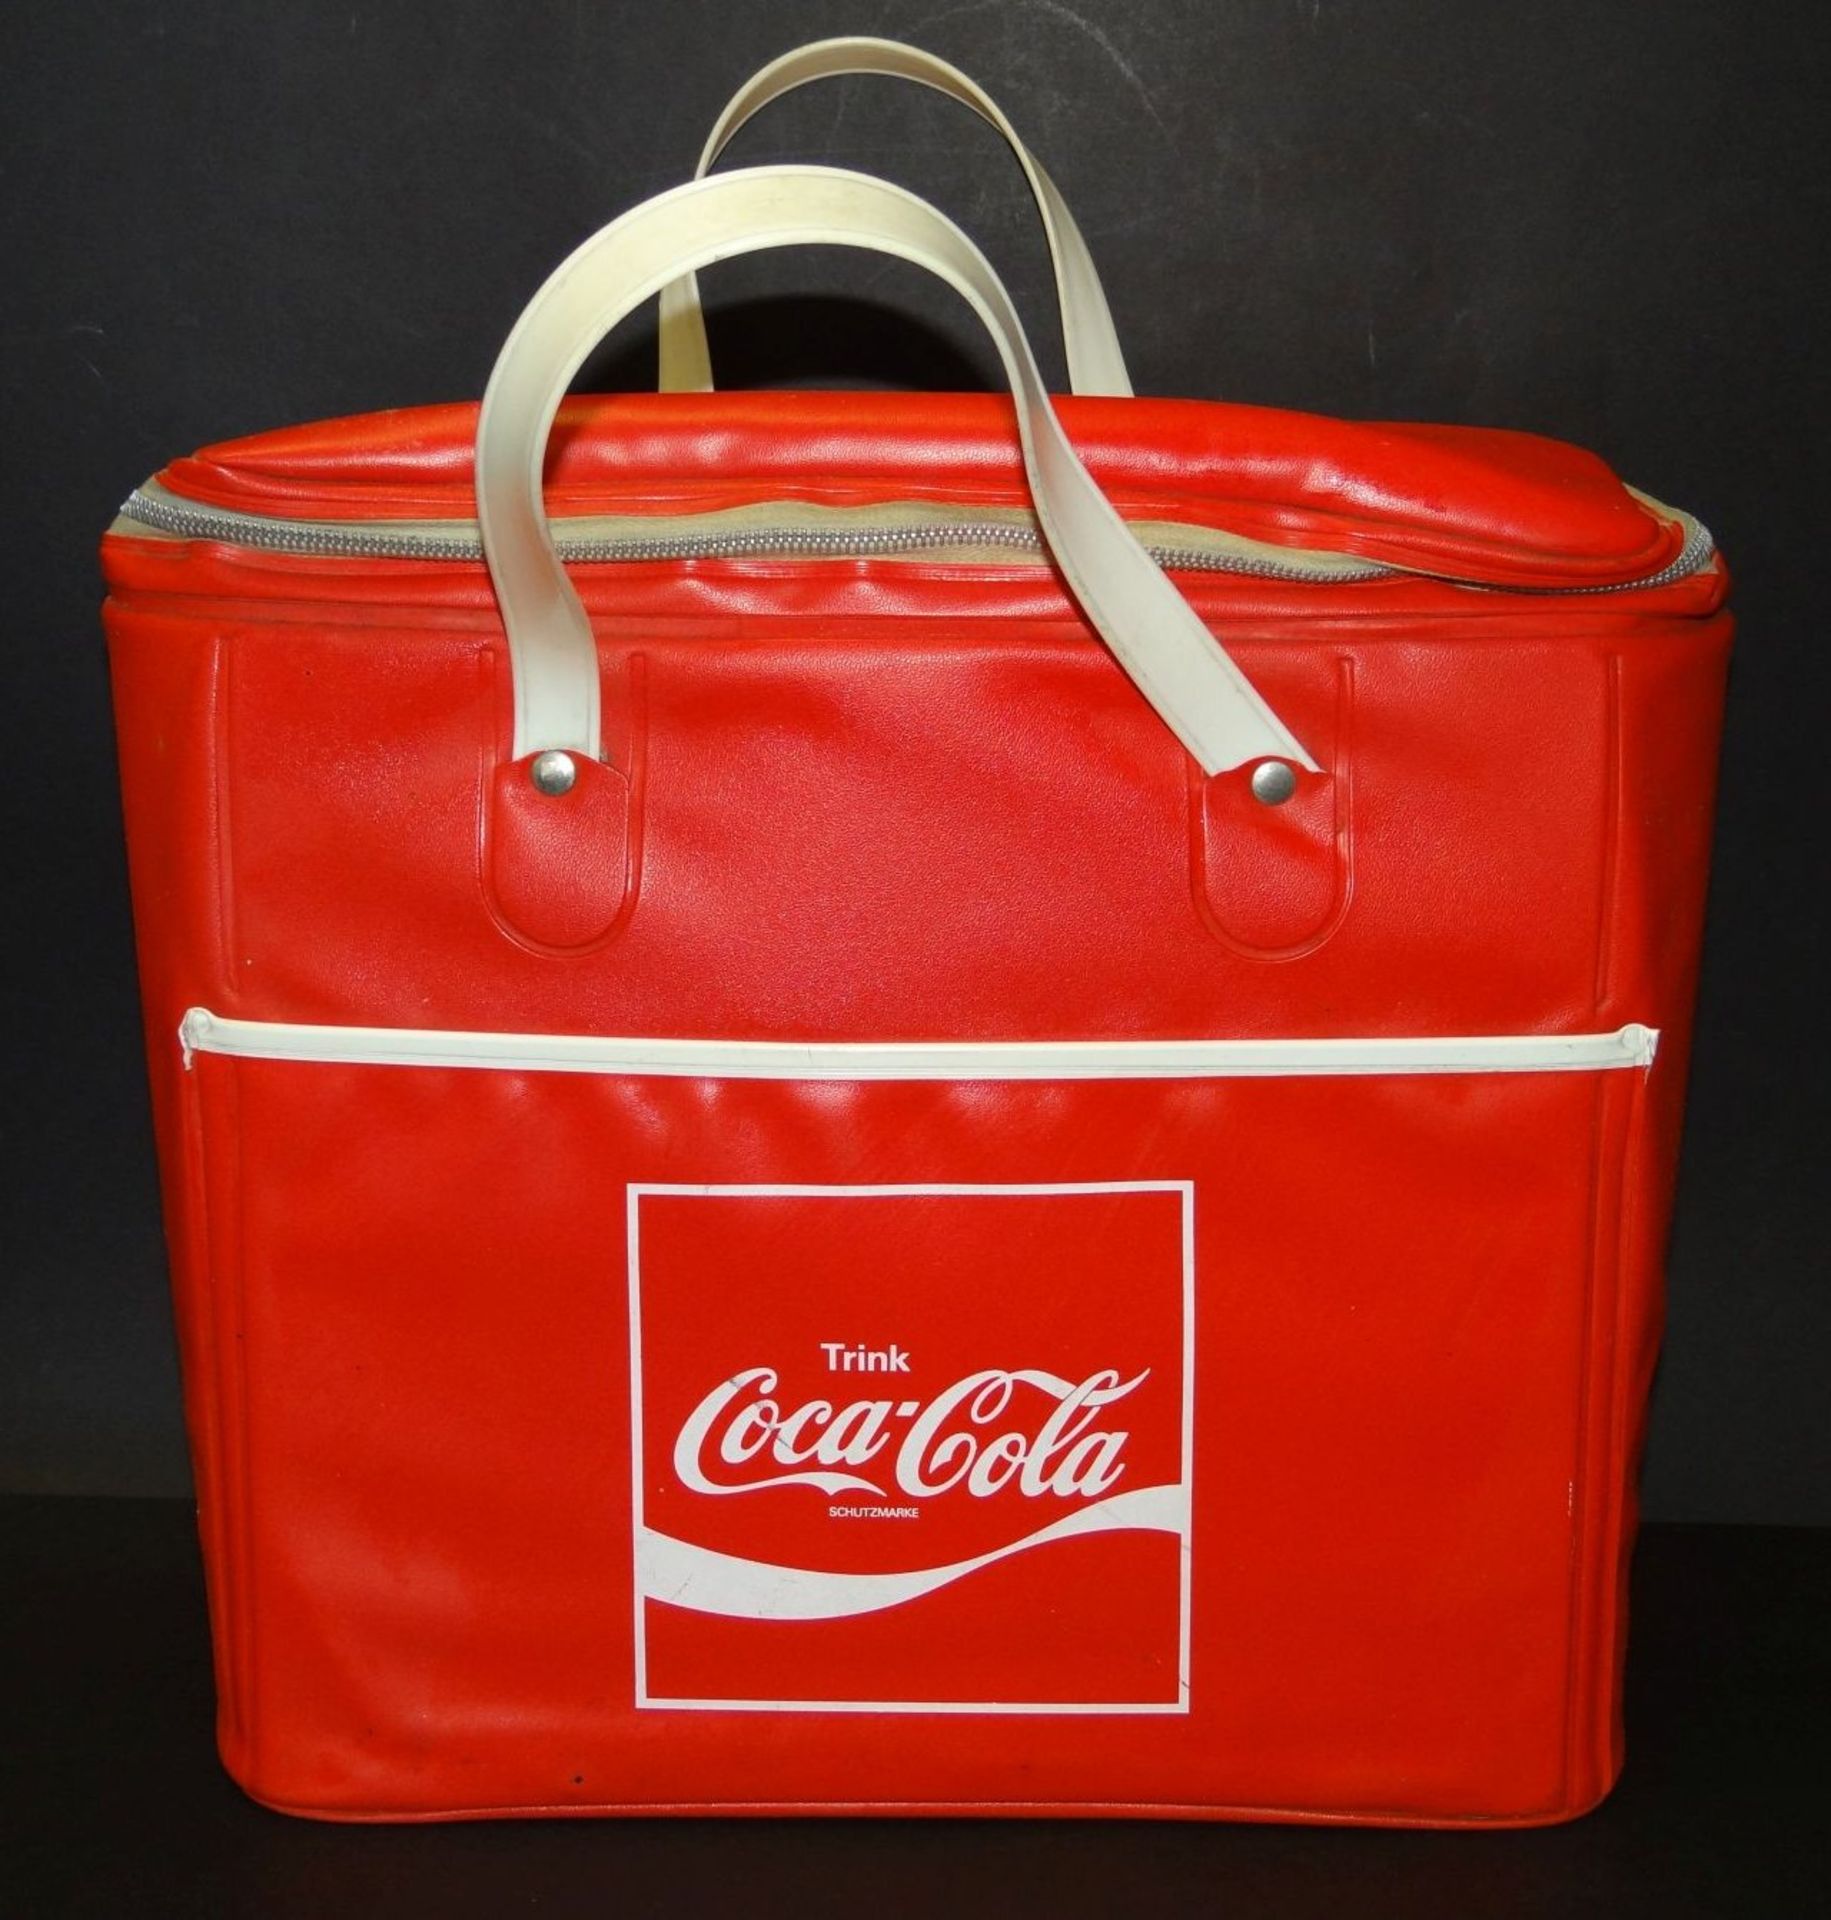 Kuhltasche mit Coca Cola Werbung, 60-70-er Jahre, Kunststoff